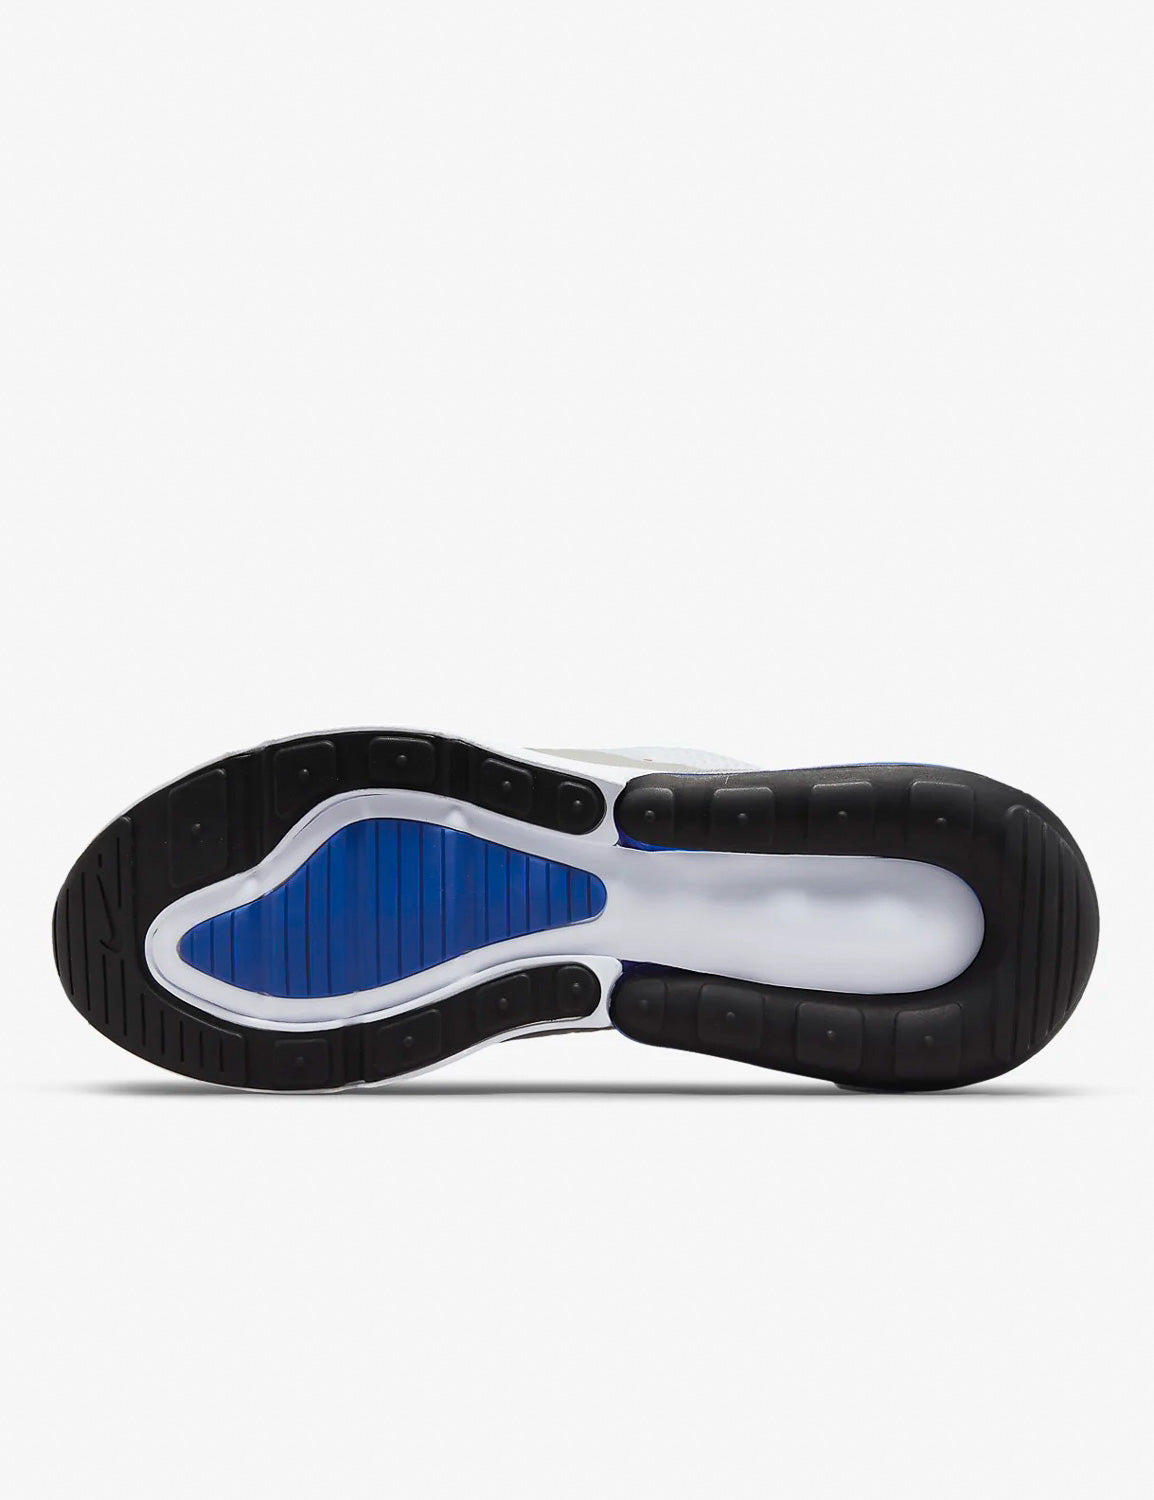 Nike Air Max 270, Sneakers Homme, Nike